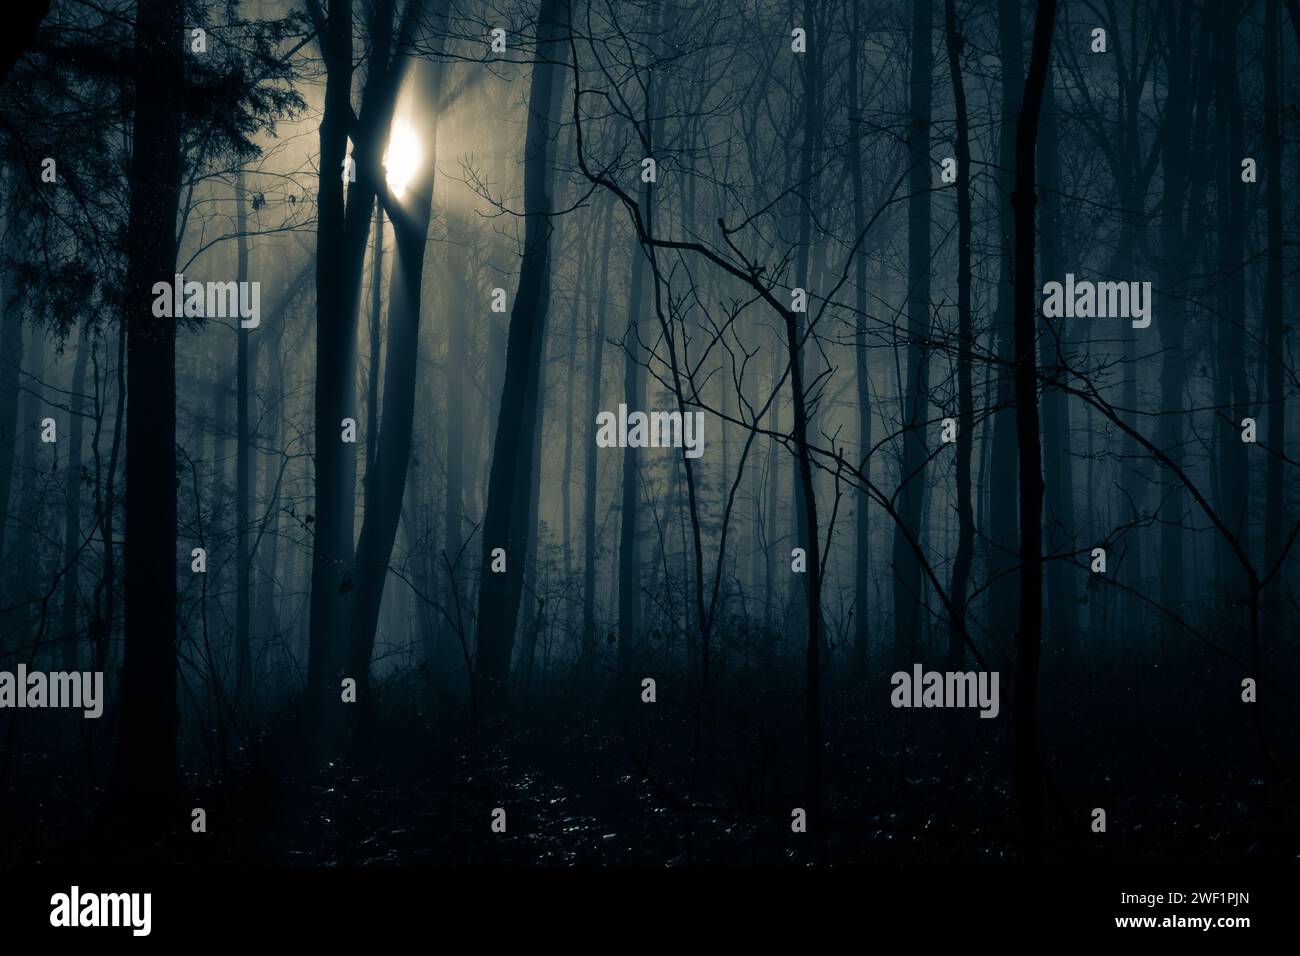 Inquietante immagine monocromatica blu di luce che annega nell'oscurità degli alberi e della nebbia, con gocce d'acqua che scintillano nel sottobosco. Foto Stock